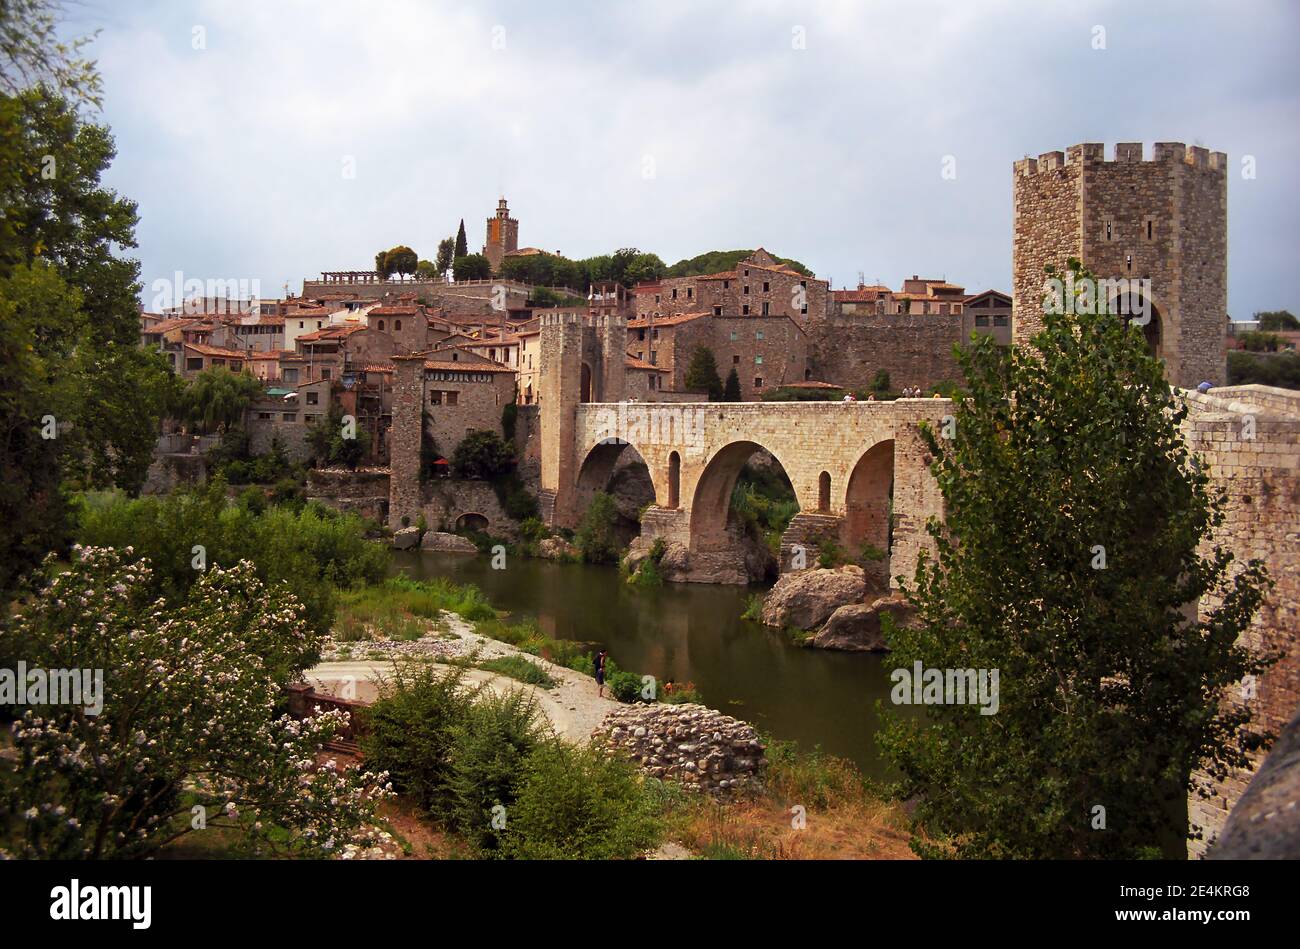 Il ponte fortificato romanico del XII secolo sul fiume Fluvià, Besalú, Catalogna, Spagna Foto Stock